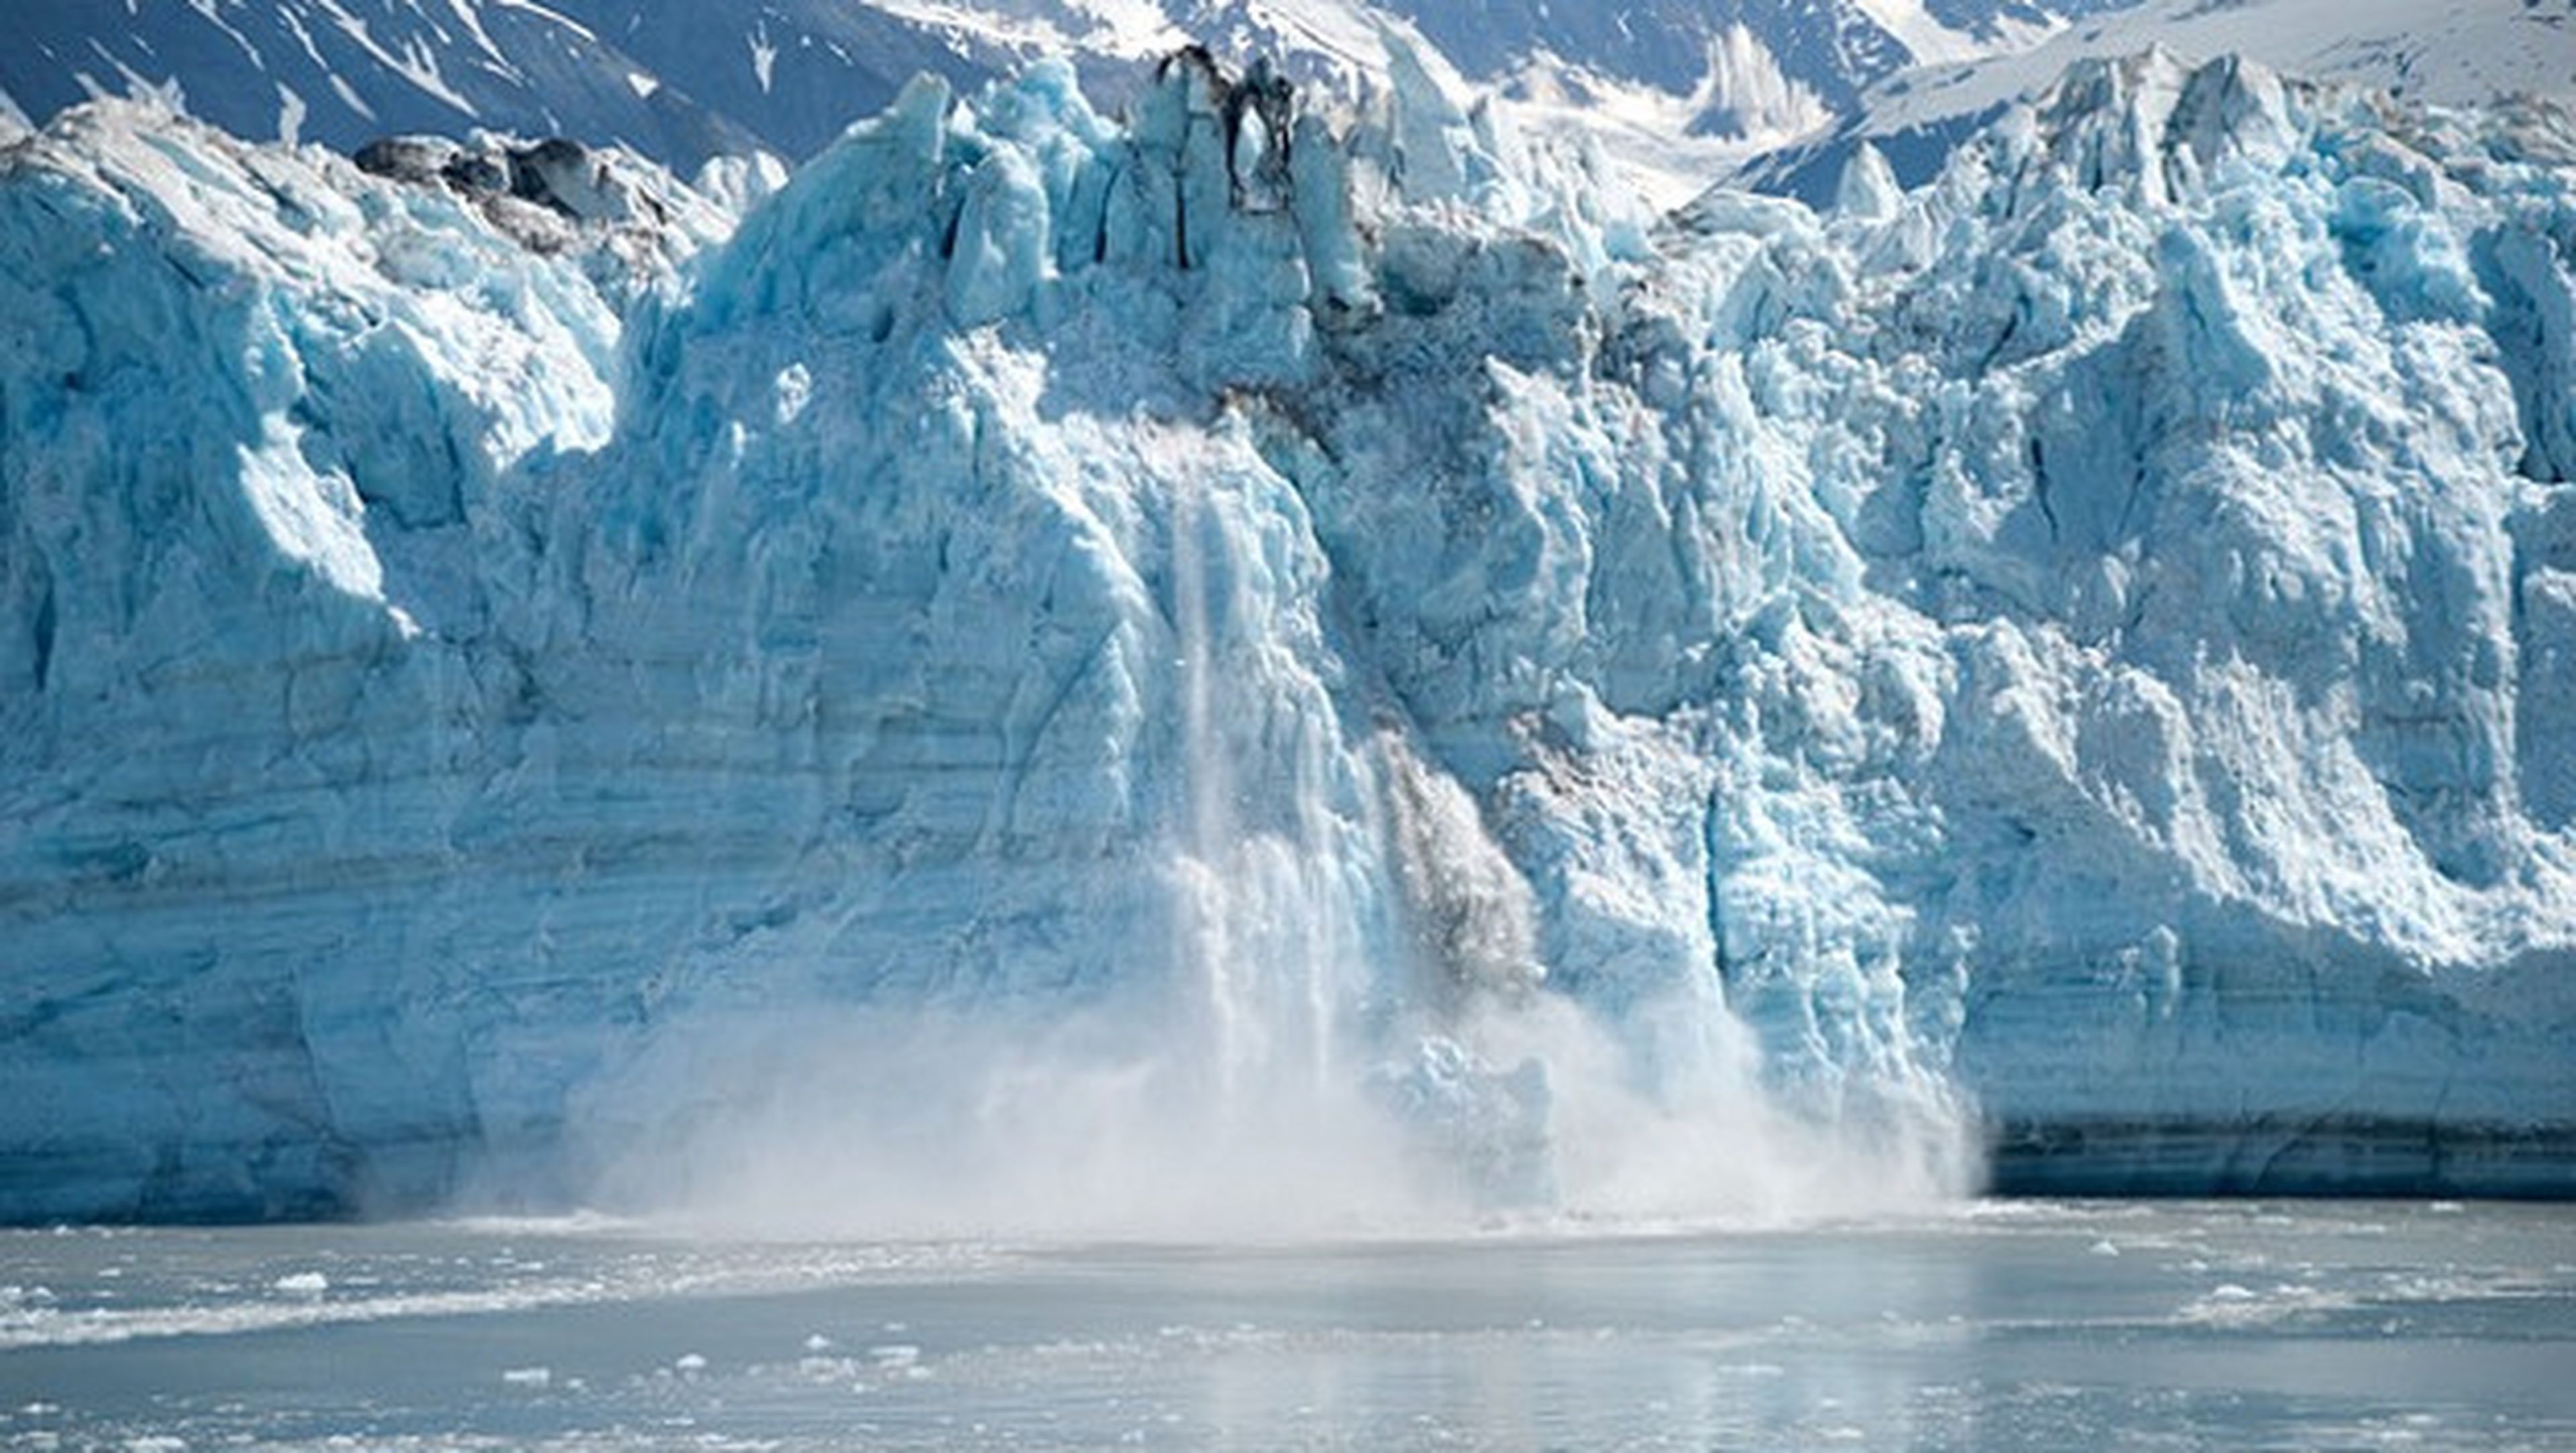 Un Glaciar se desprende y revela un ecosistema con mucha vida.